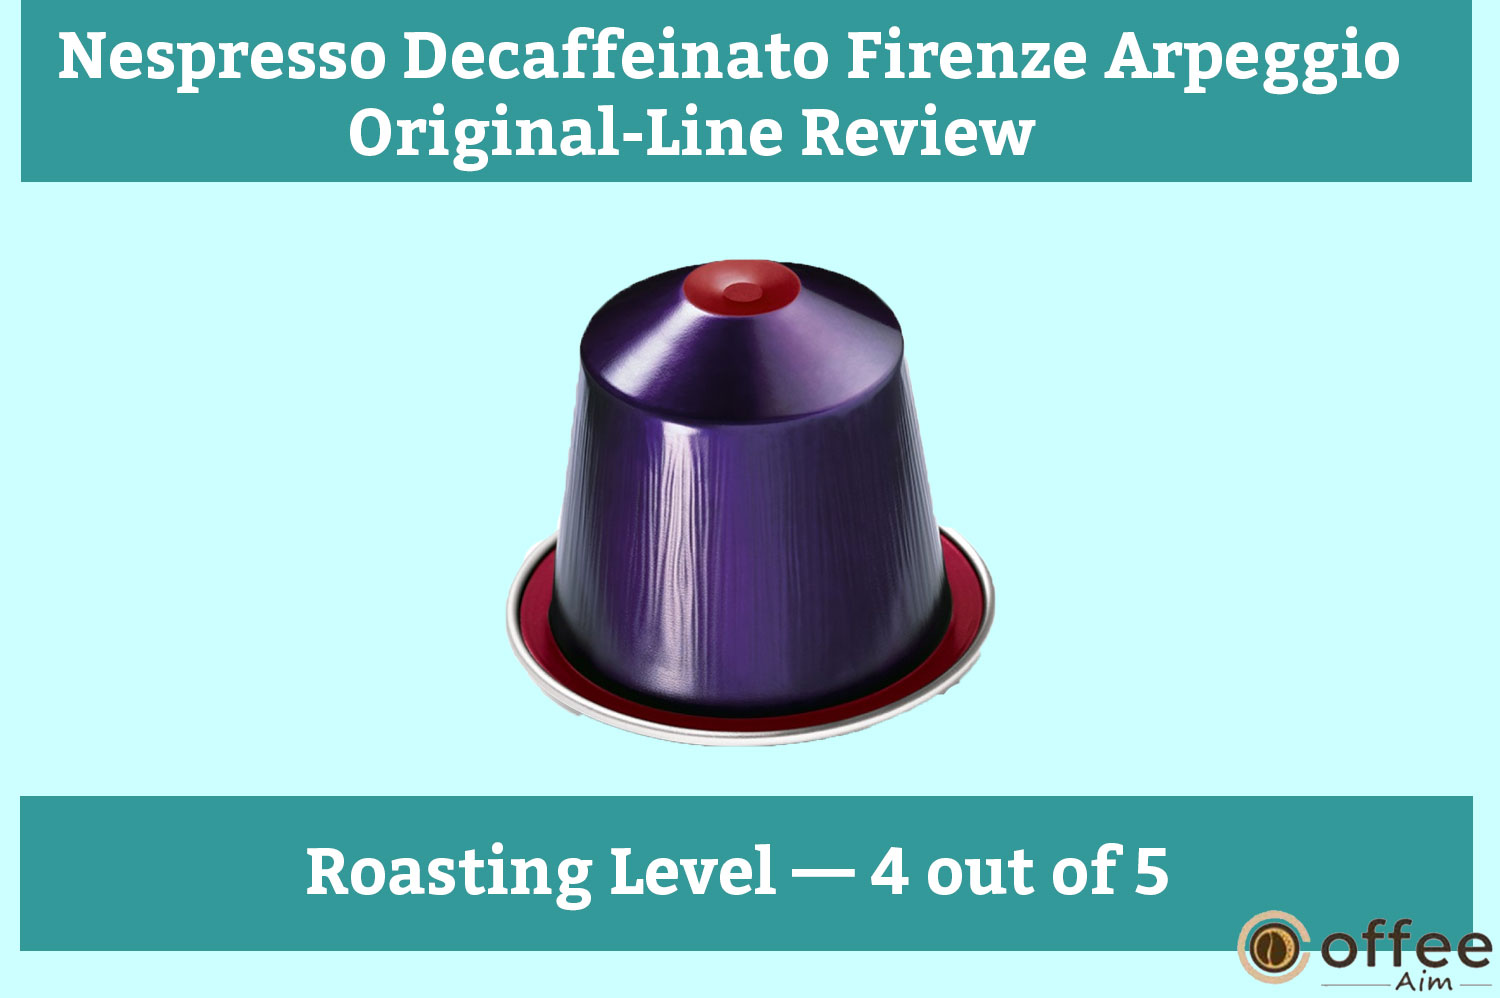 Nespresso Decaffeinato Firenze Arpeggio Original-Line Review